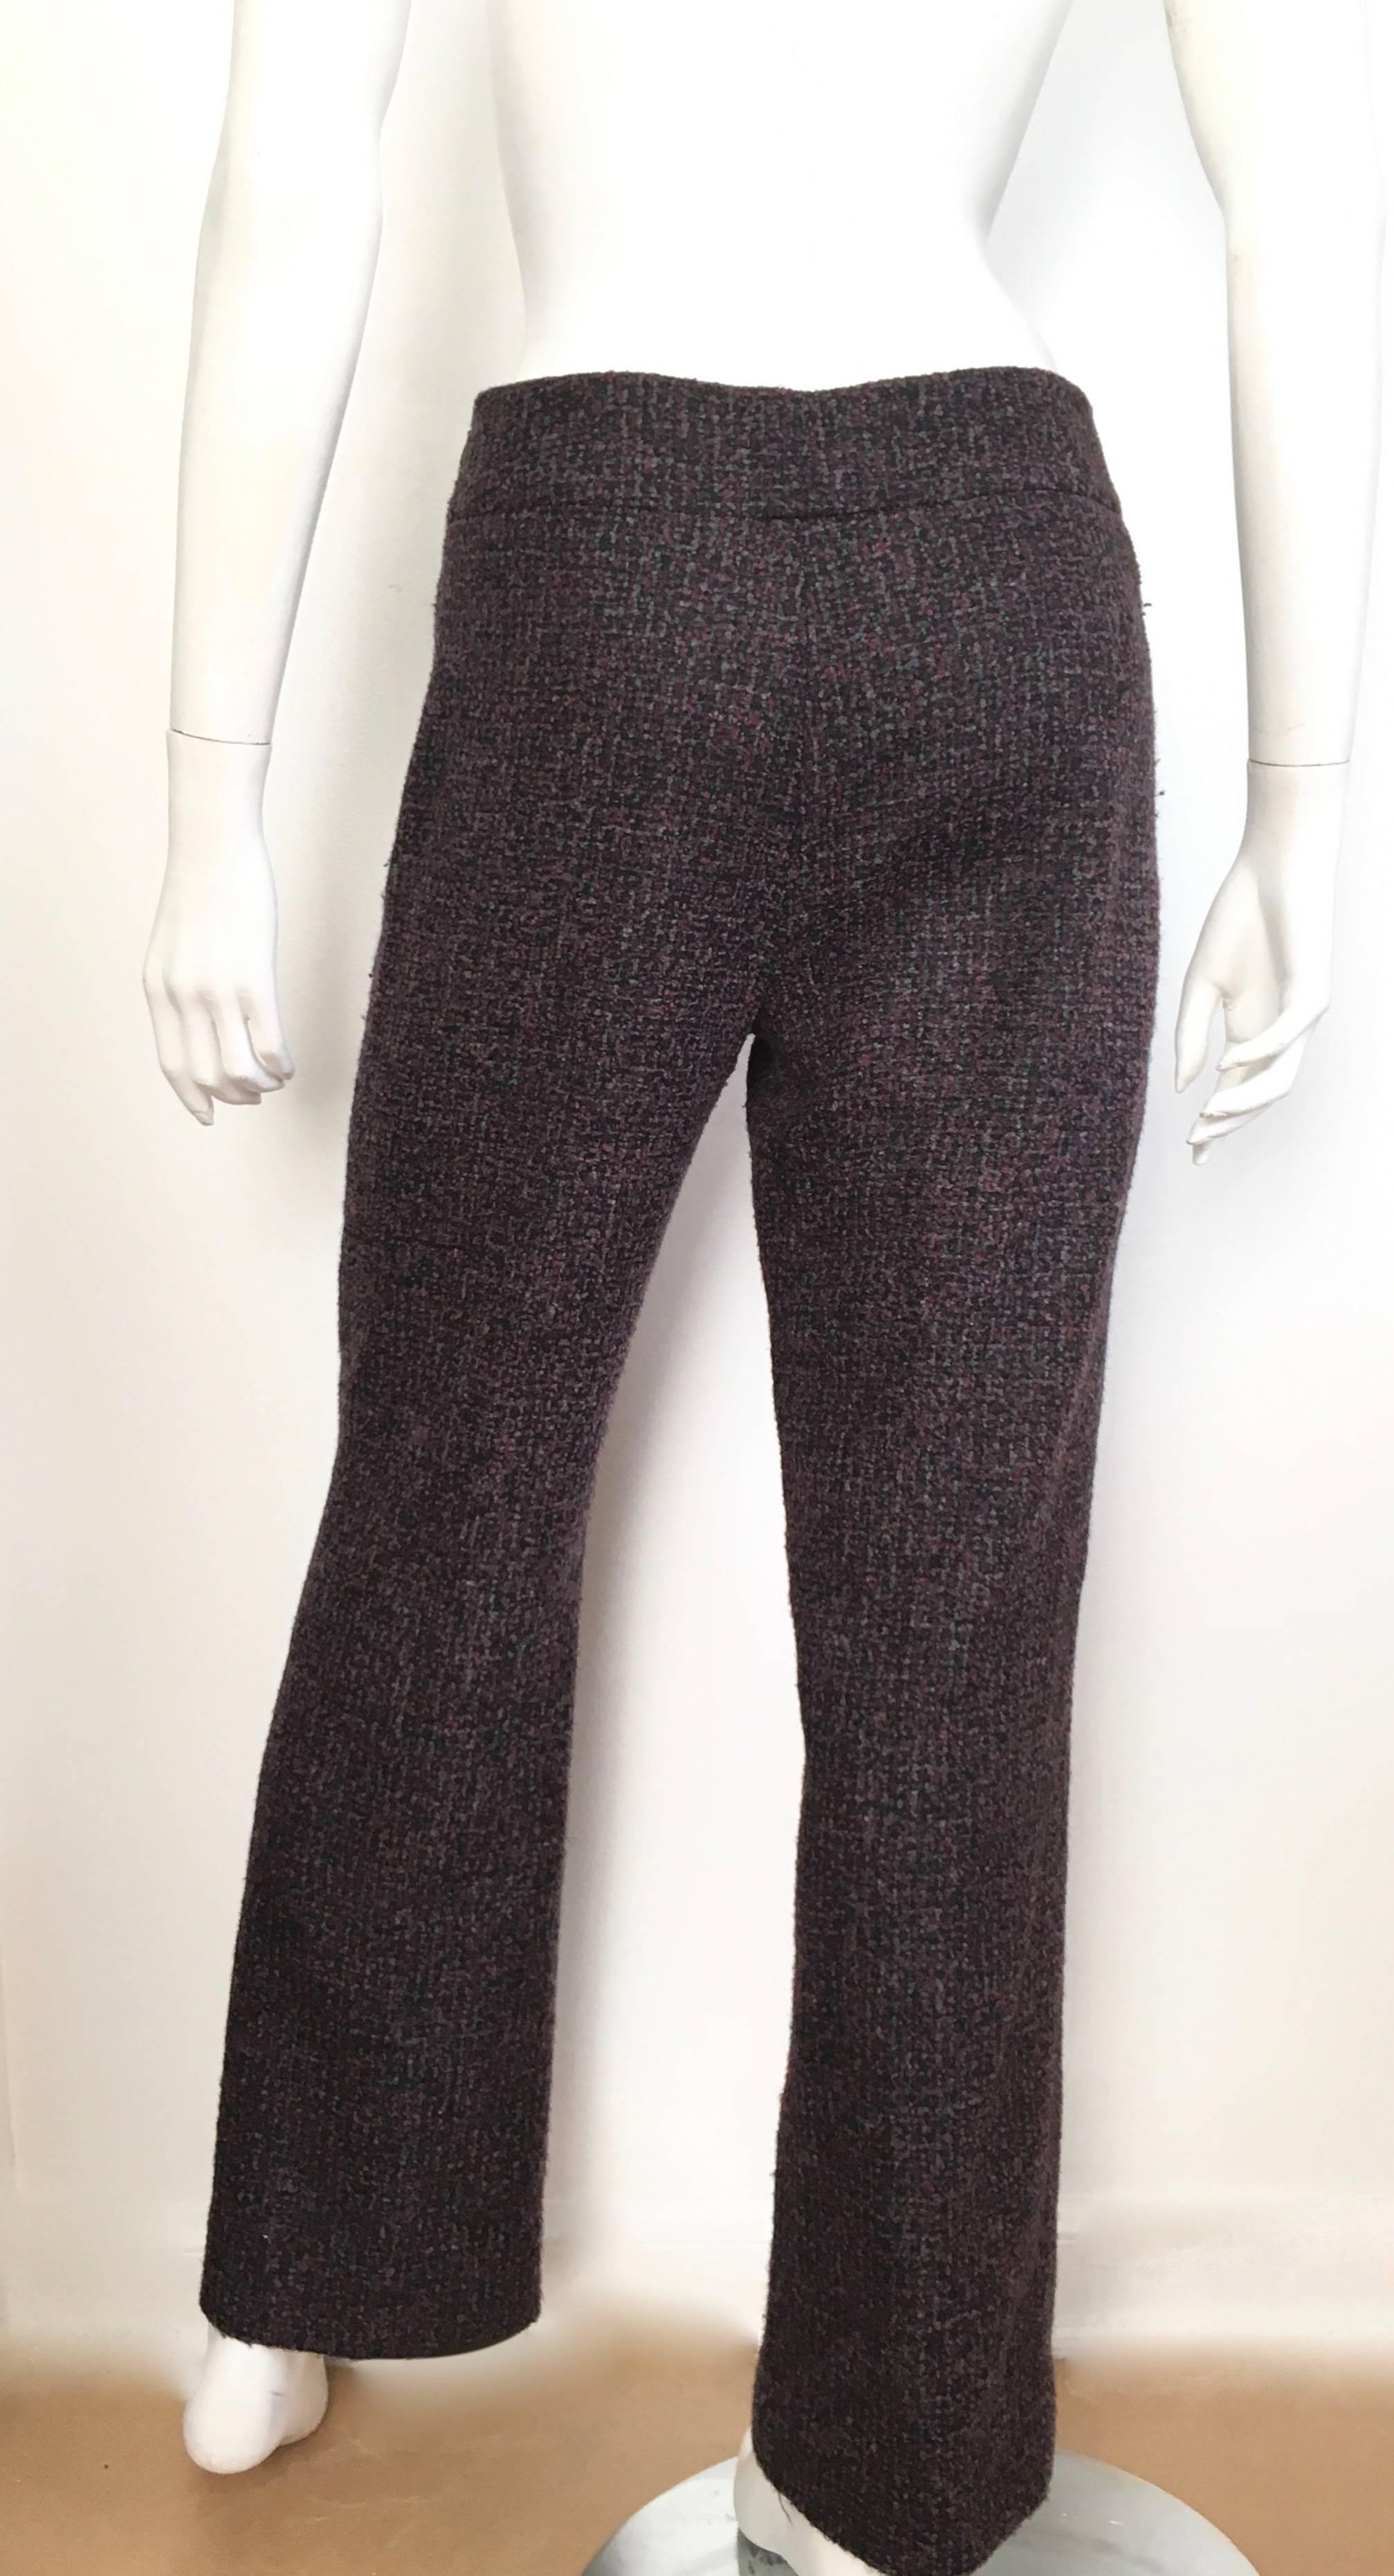 Women's or Men's Oscar de la Renta Nubby Flannel Wool Pants Size 6. Made in Italy. For Sale